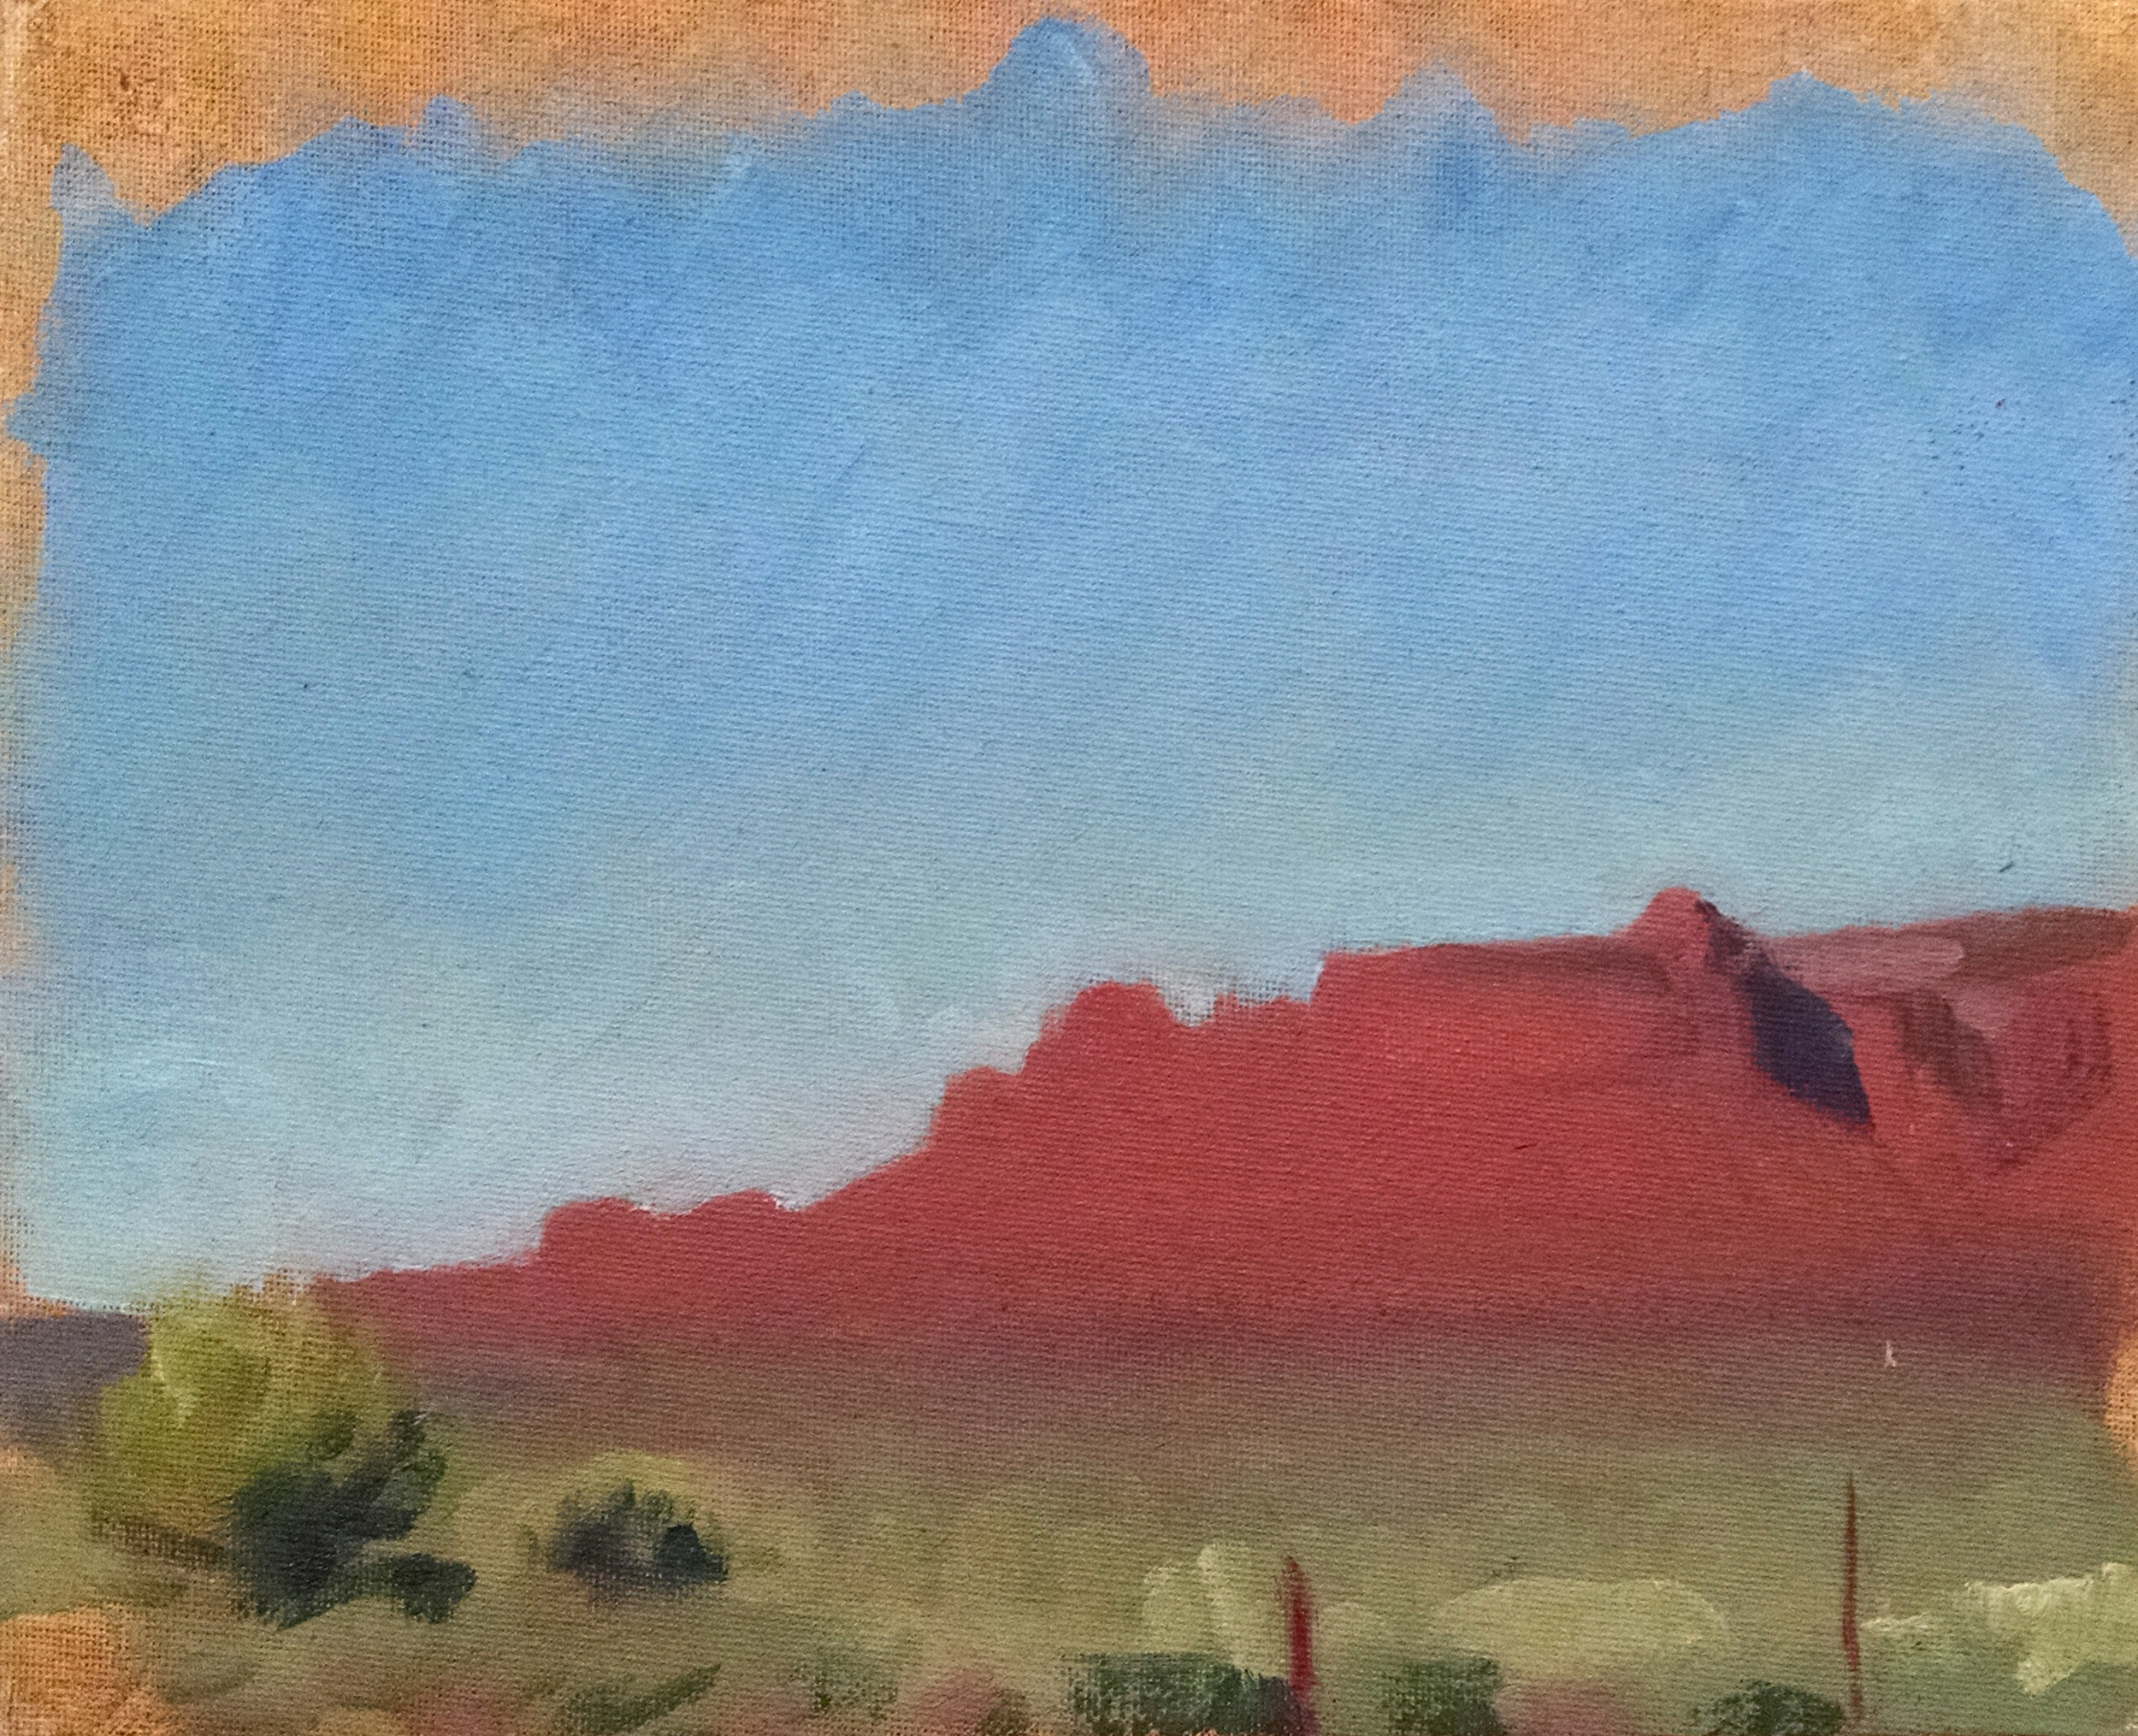   Lukachukai II, Arizona , 8 x 10 in.  Oil on canvas. Available for purchase. (2016) 